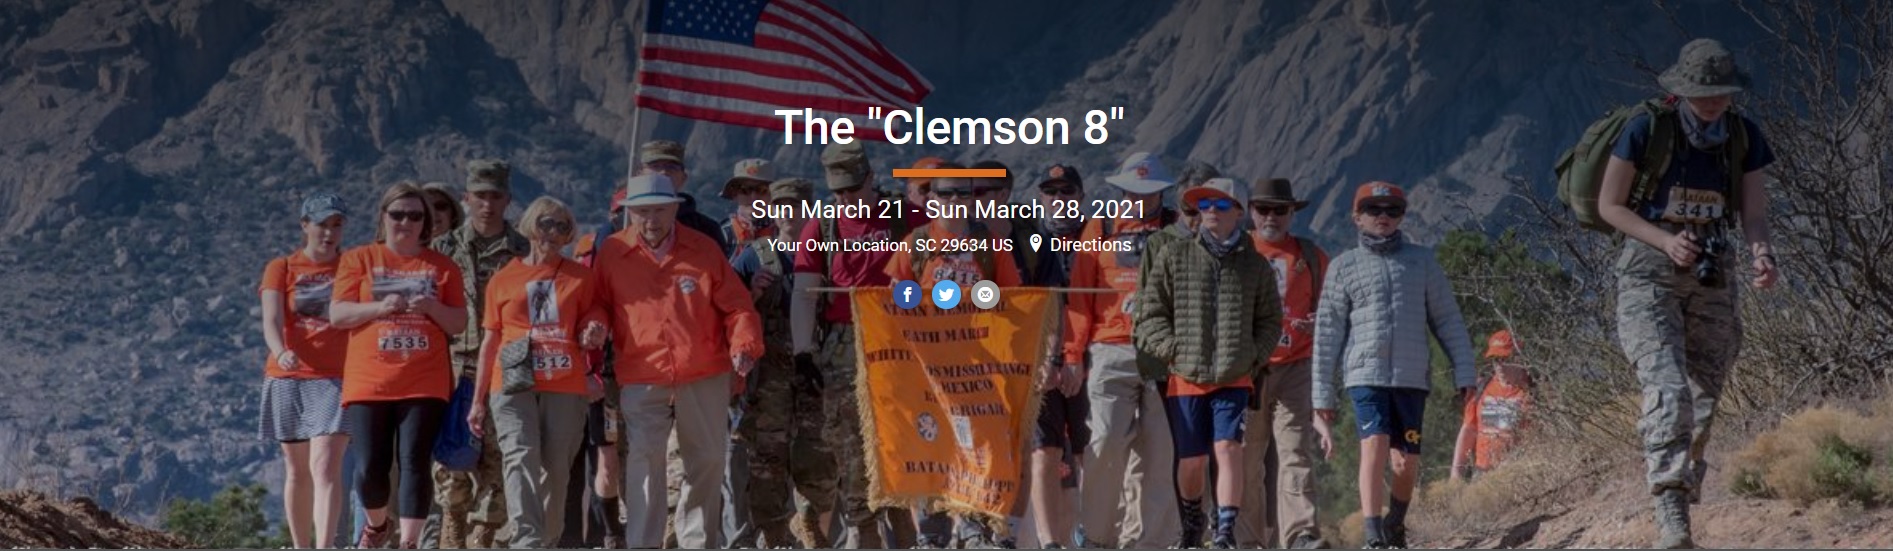 Clemson 8 Challenge (March 21-28)